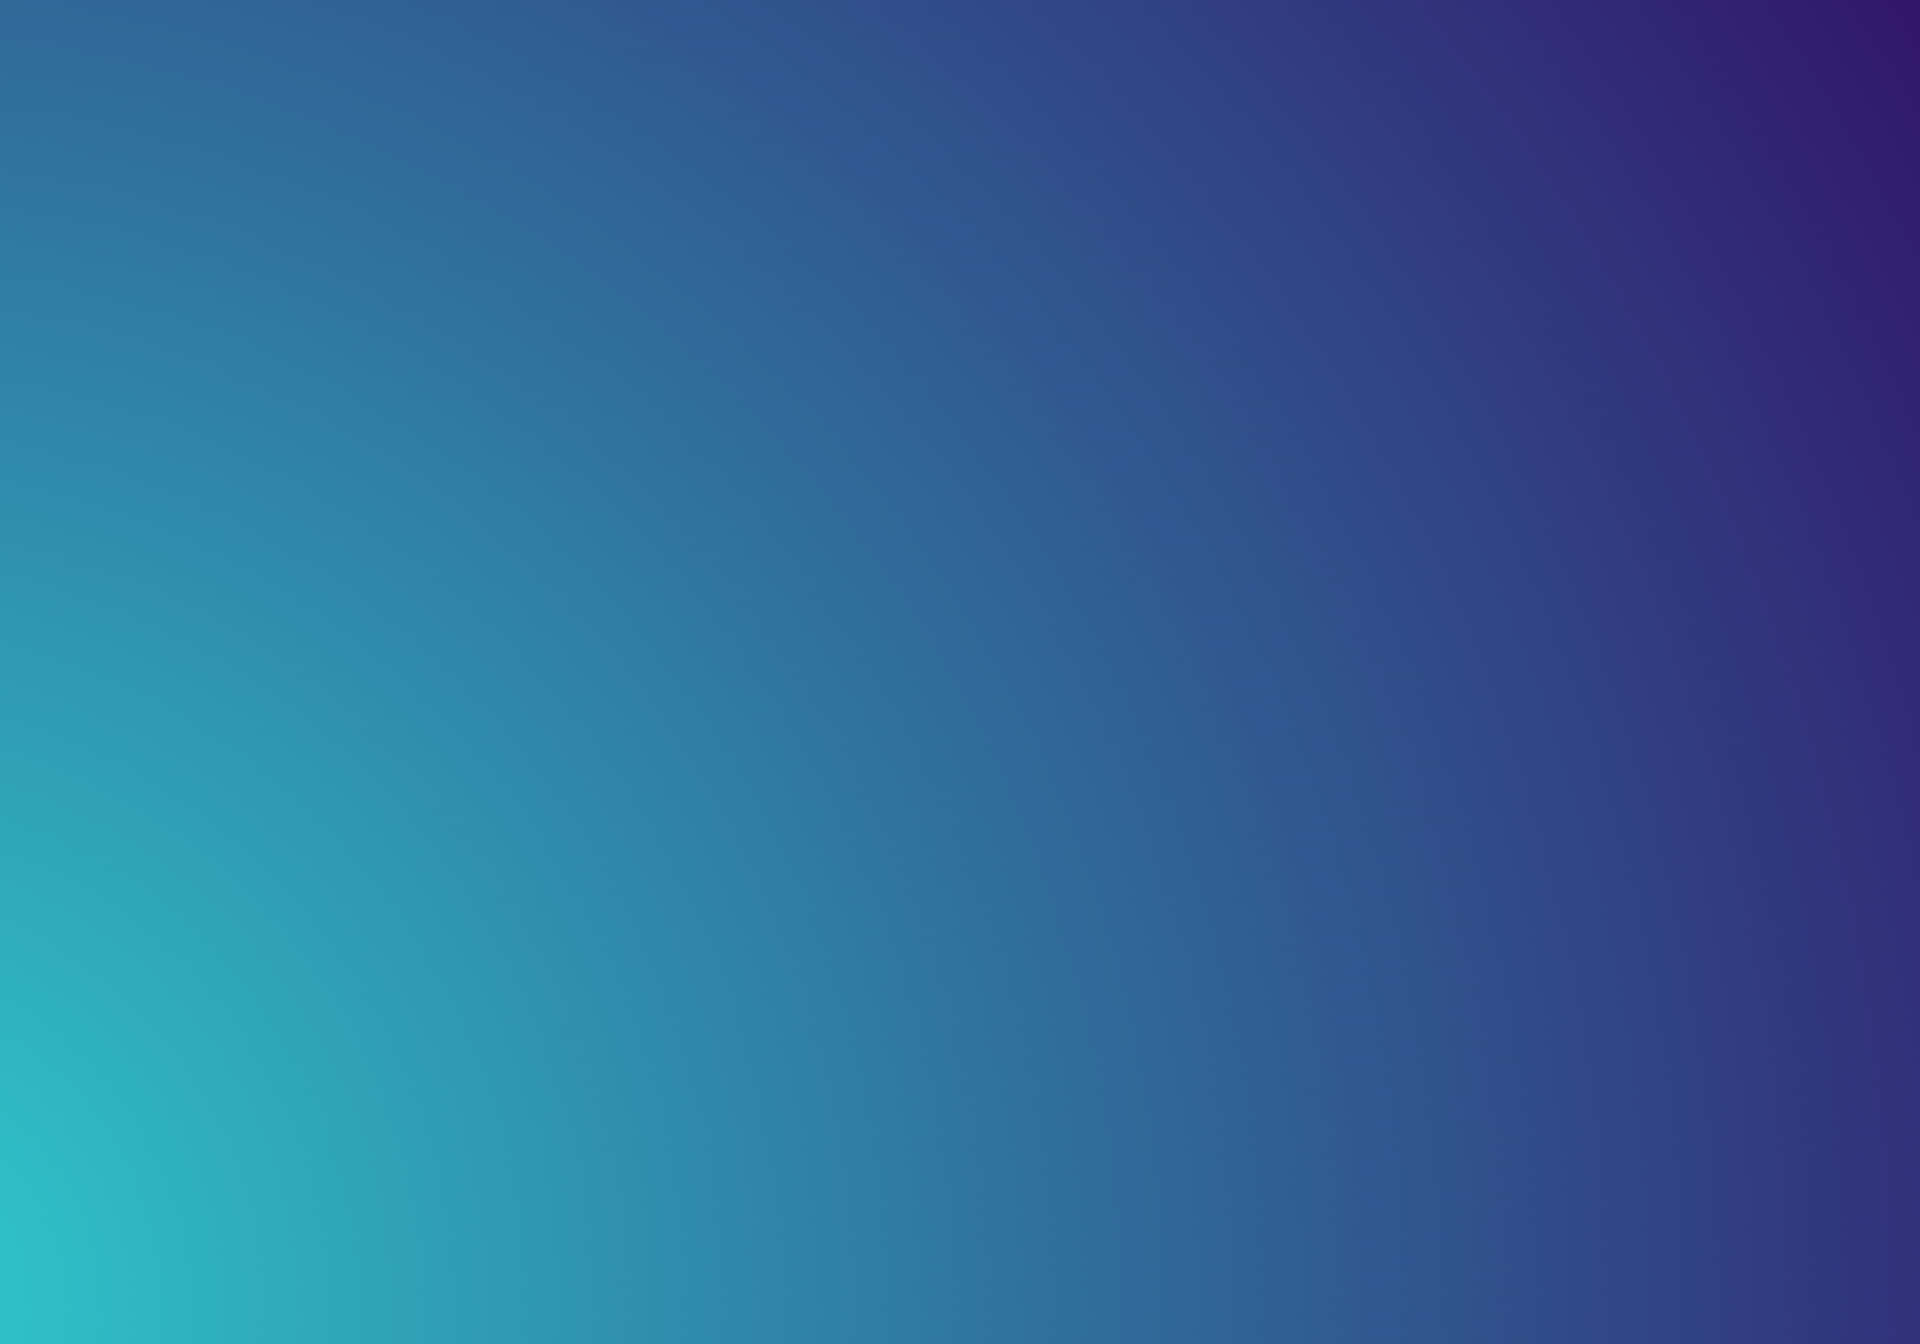 Unfondo Azul Y Morado Con Un Patrón A Rayas Azul Y Morado Fondo de pantalla